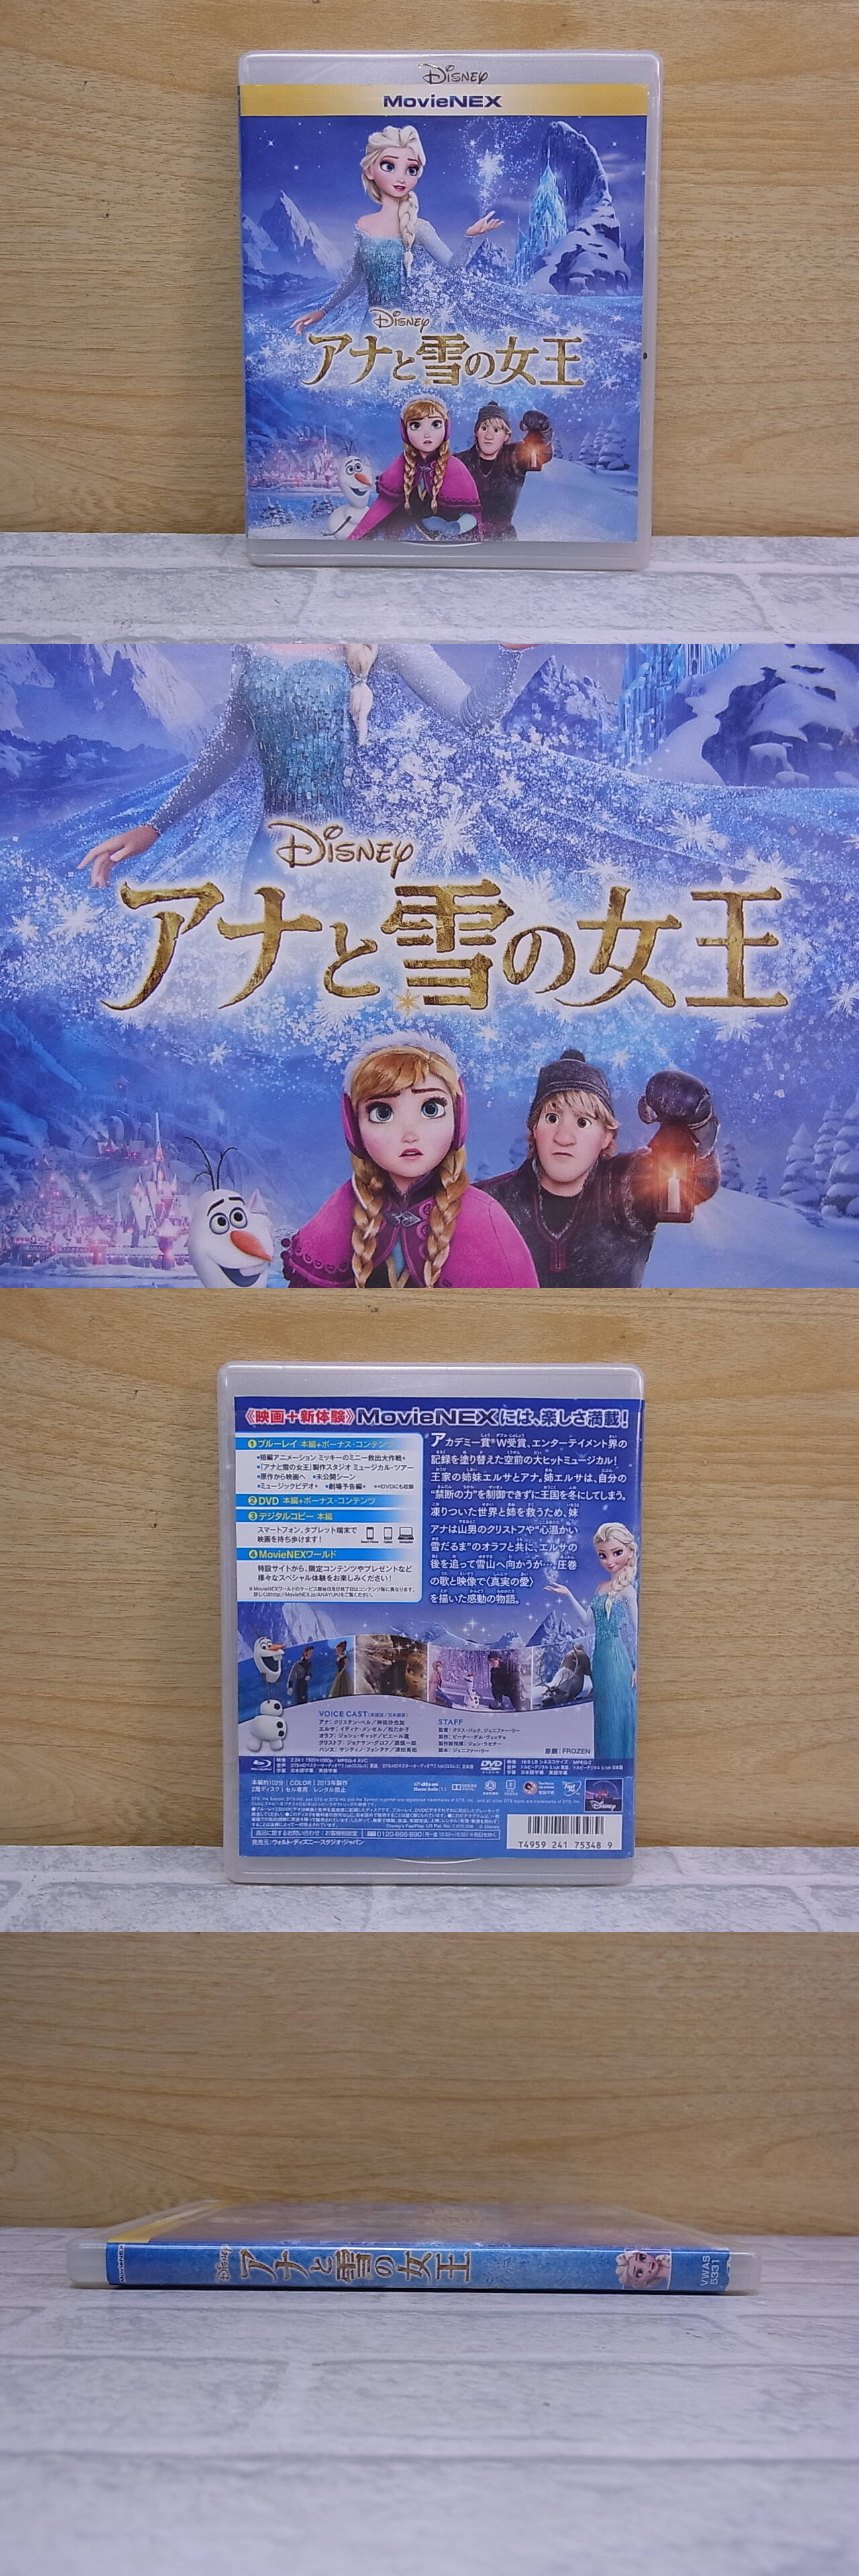 △E/401○アニメBD(ブルーレイ)☆ディズニー Disney☆アナと雪の女王